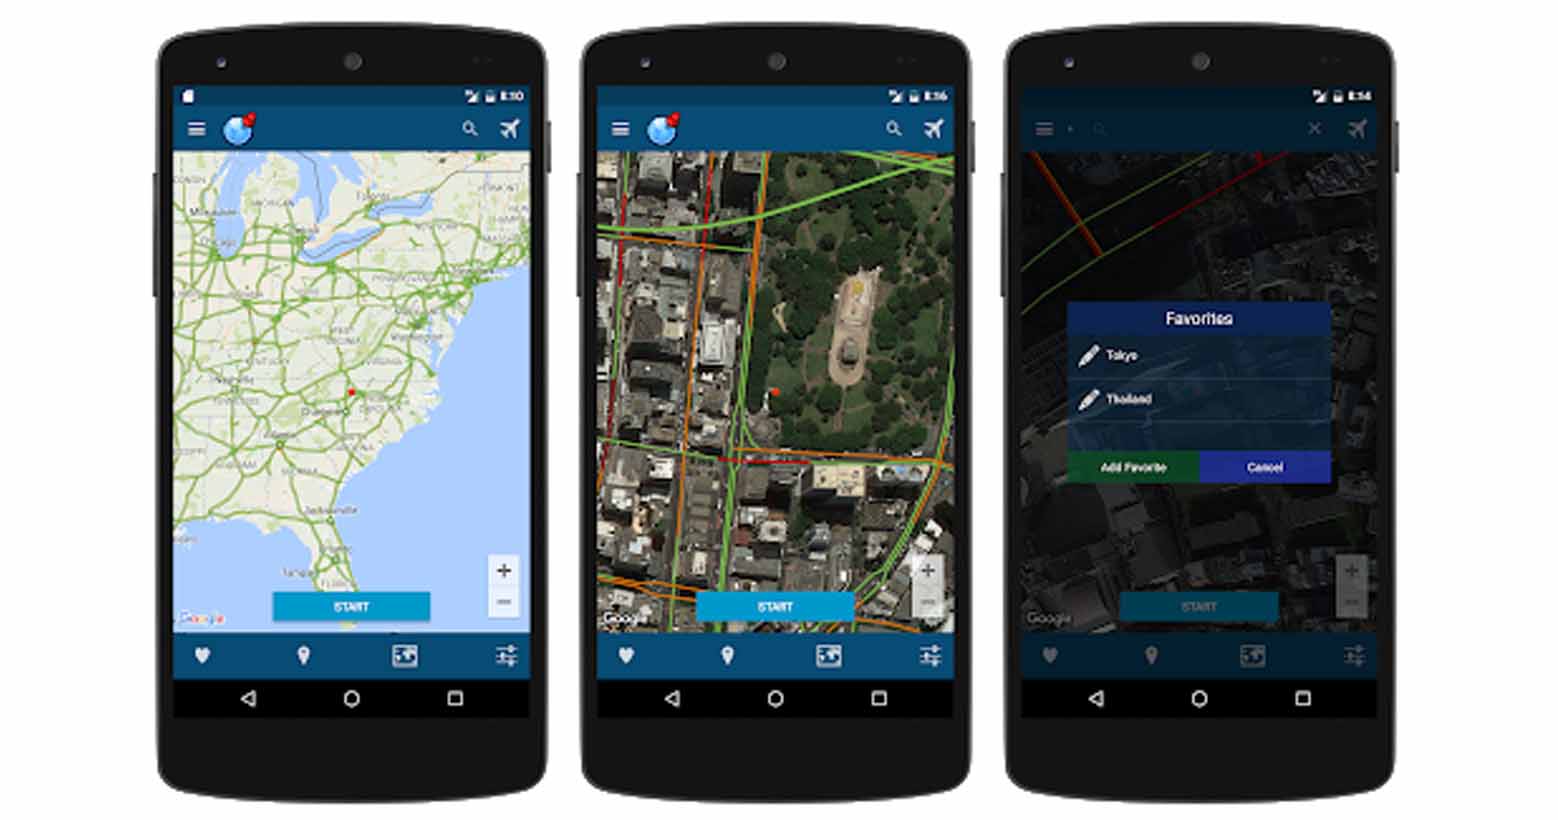 Fake gps - fake location merupakan aplikasi Android untuk membuat lokasi palsu dengan mudah